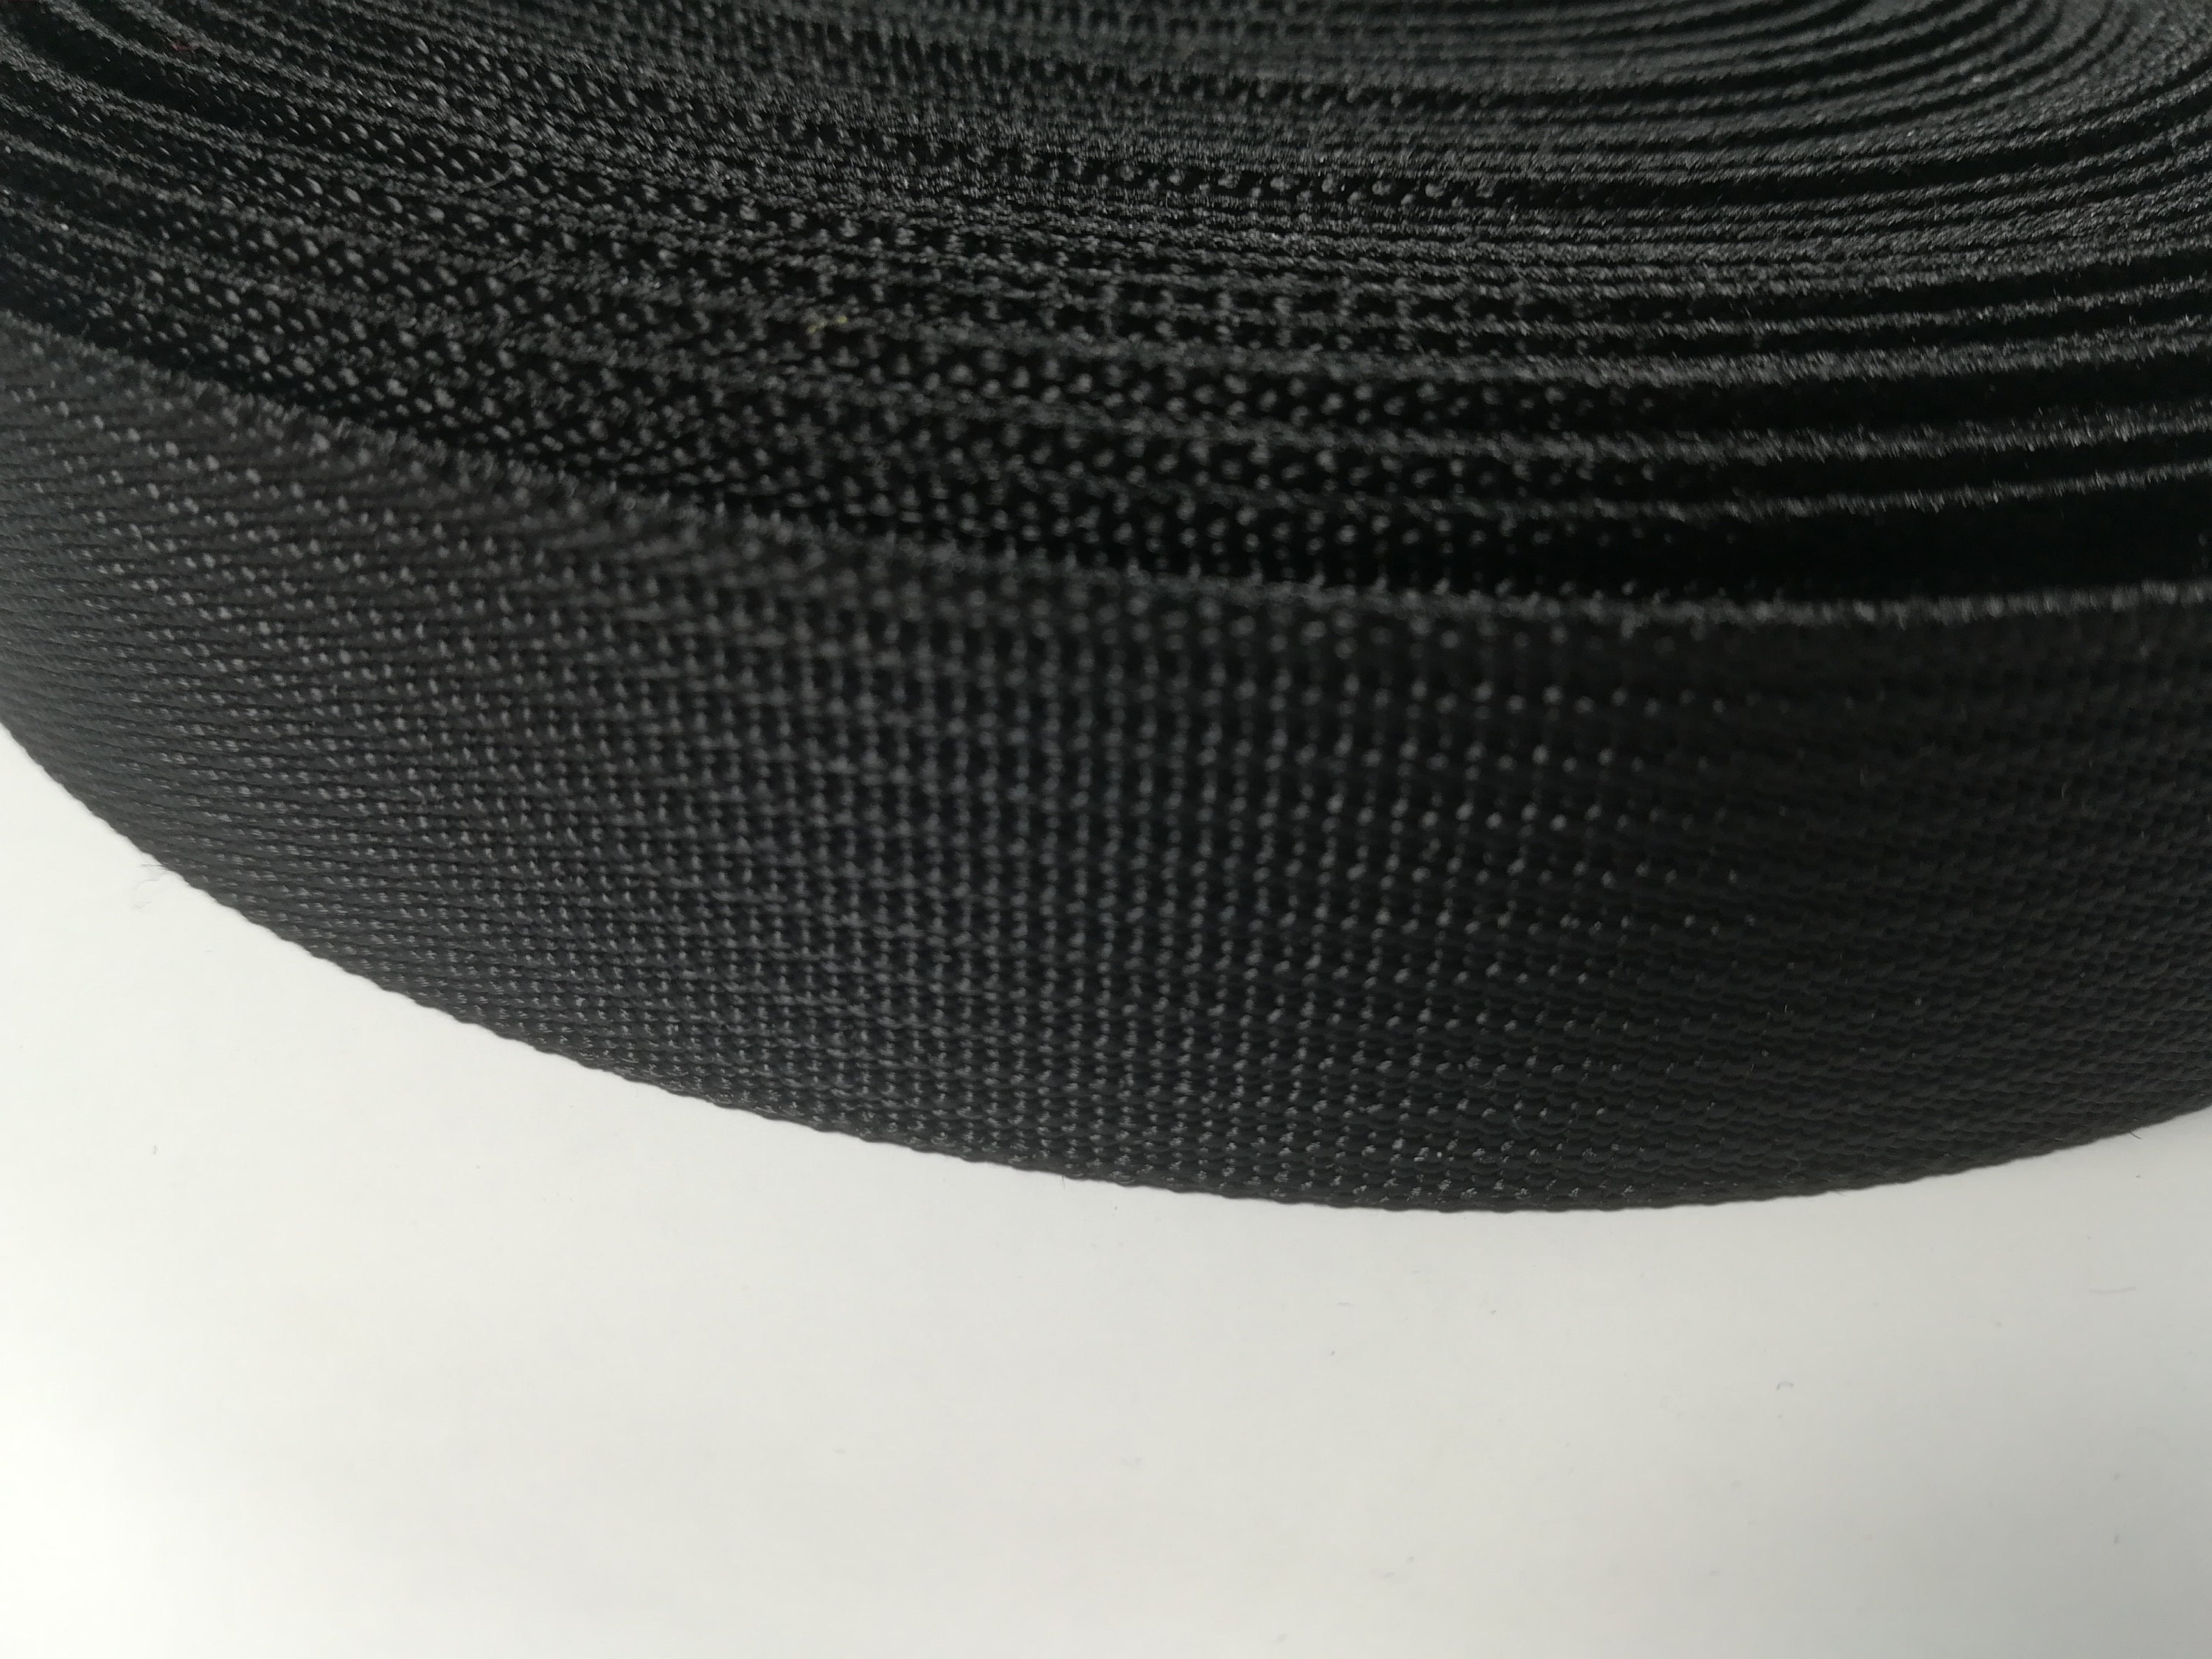 Tissu mixte en fibre de carbone et Kevlar bleu 200 g/m², tissu aramide de  carbone, 30 cm de large : : Cuisine et Maison